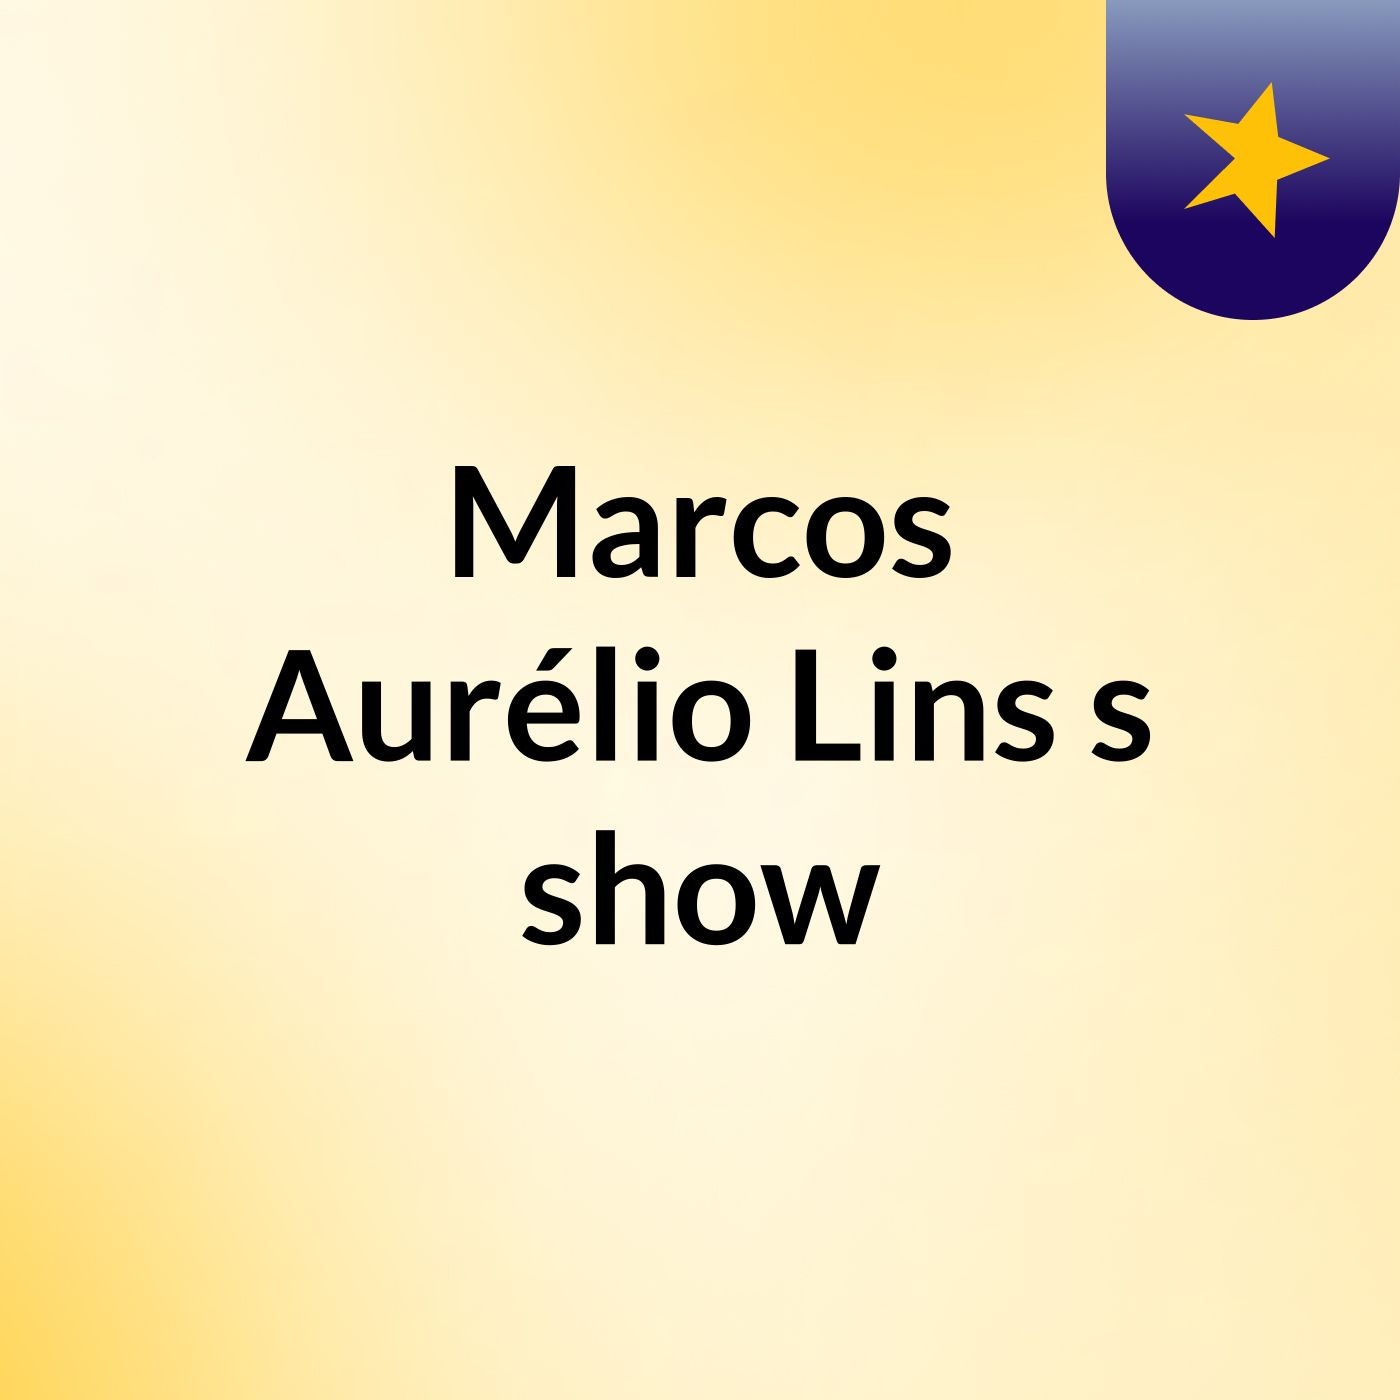 Marcos Aurélio Lins's show